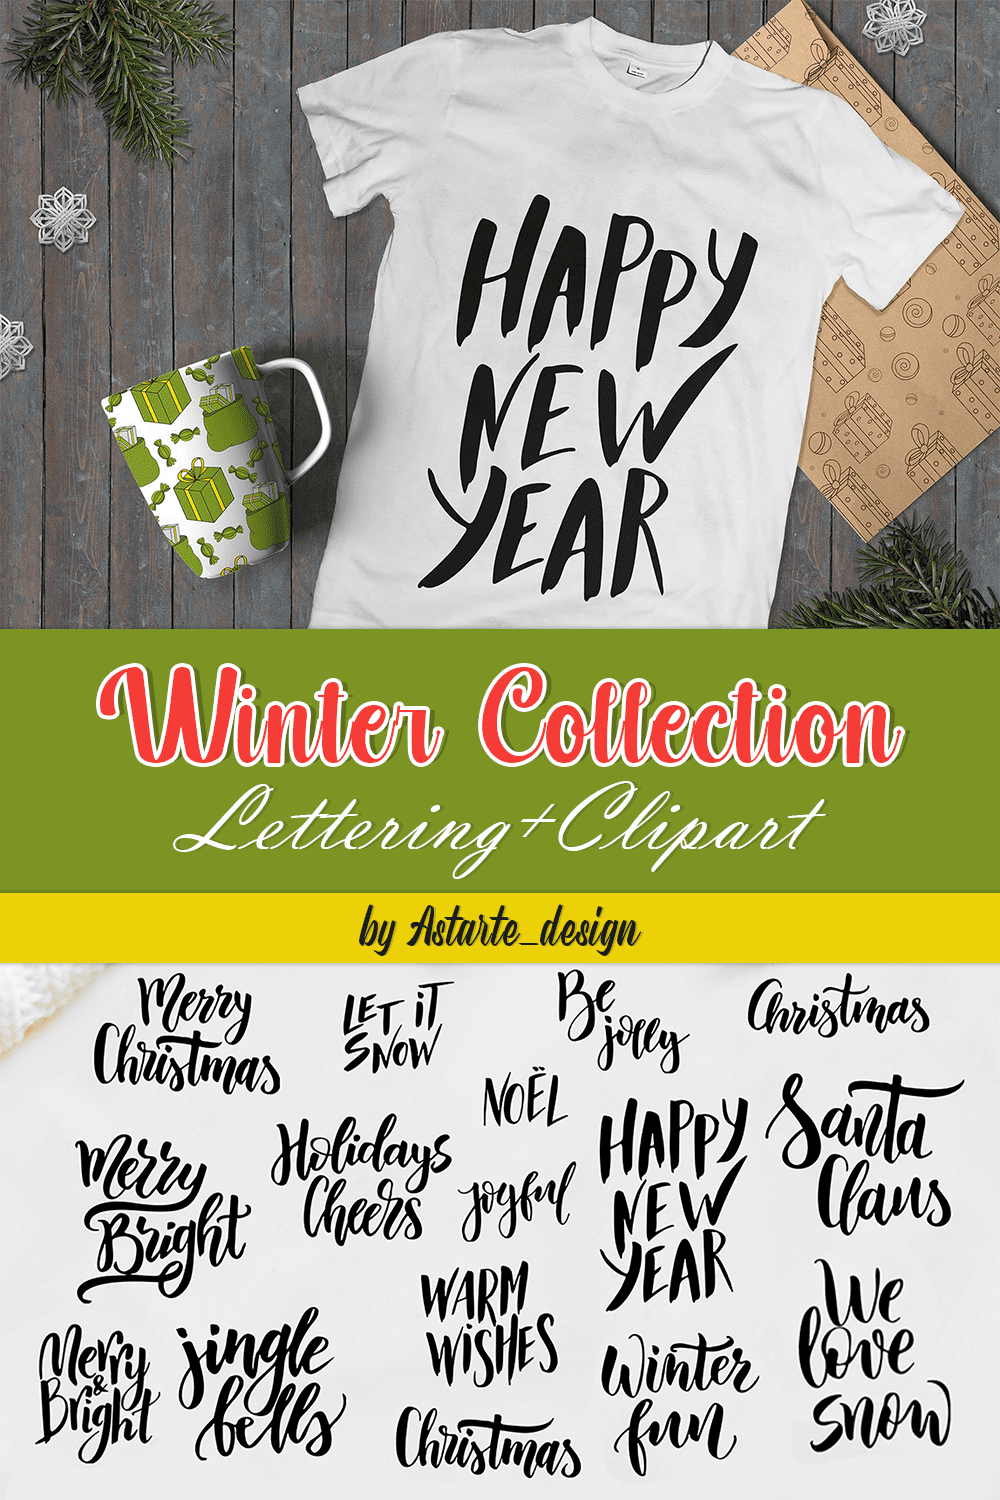 winter collection letteringclipart pinterest 769